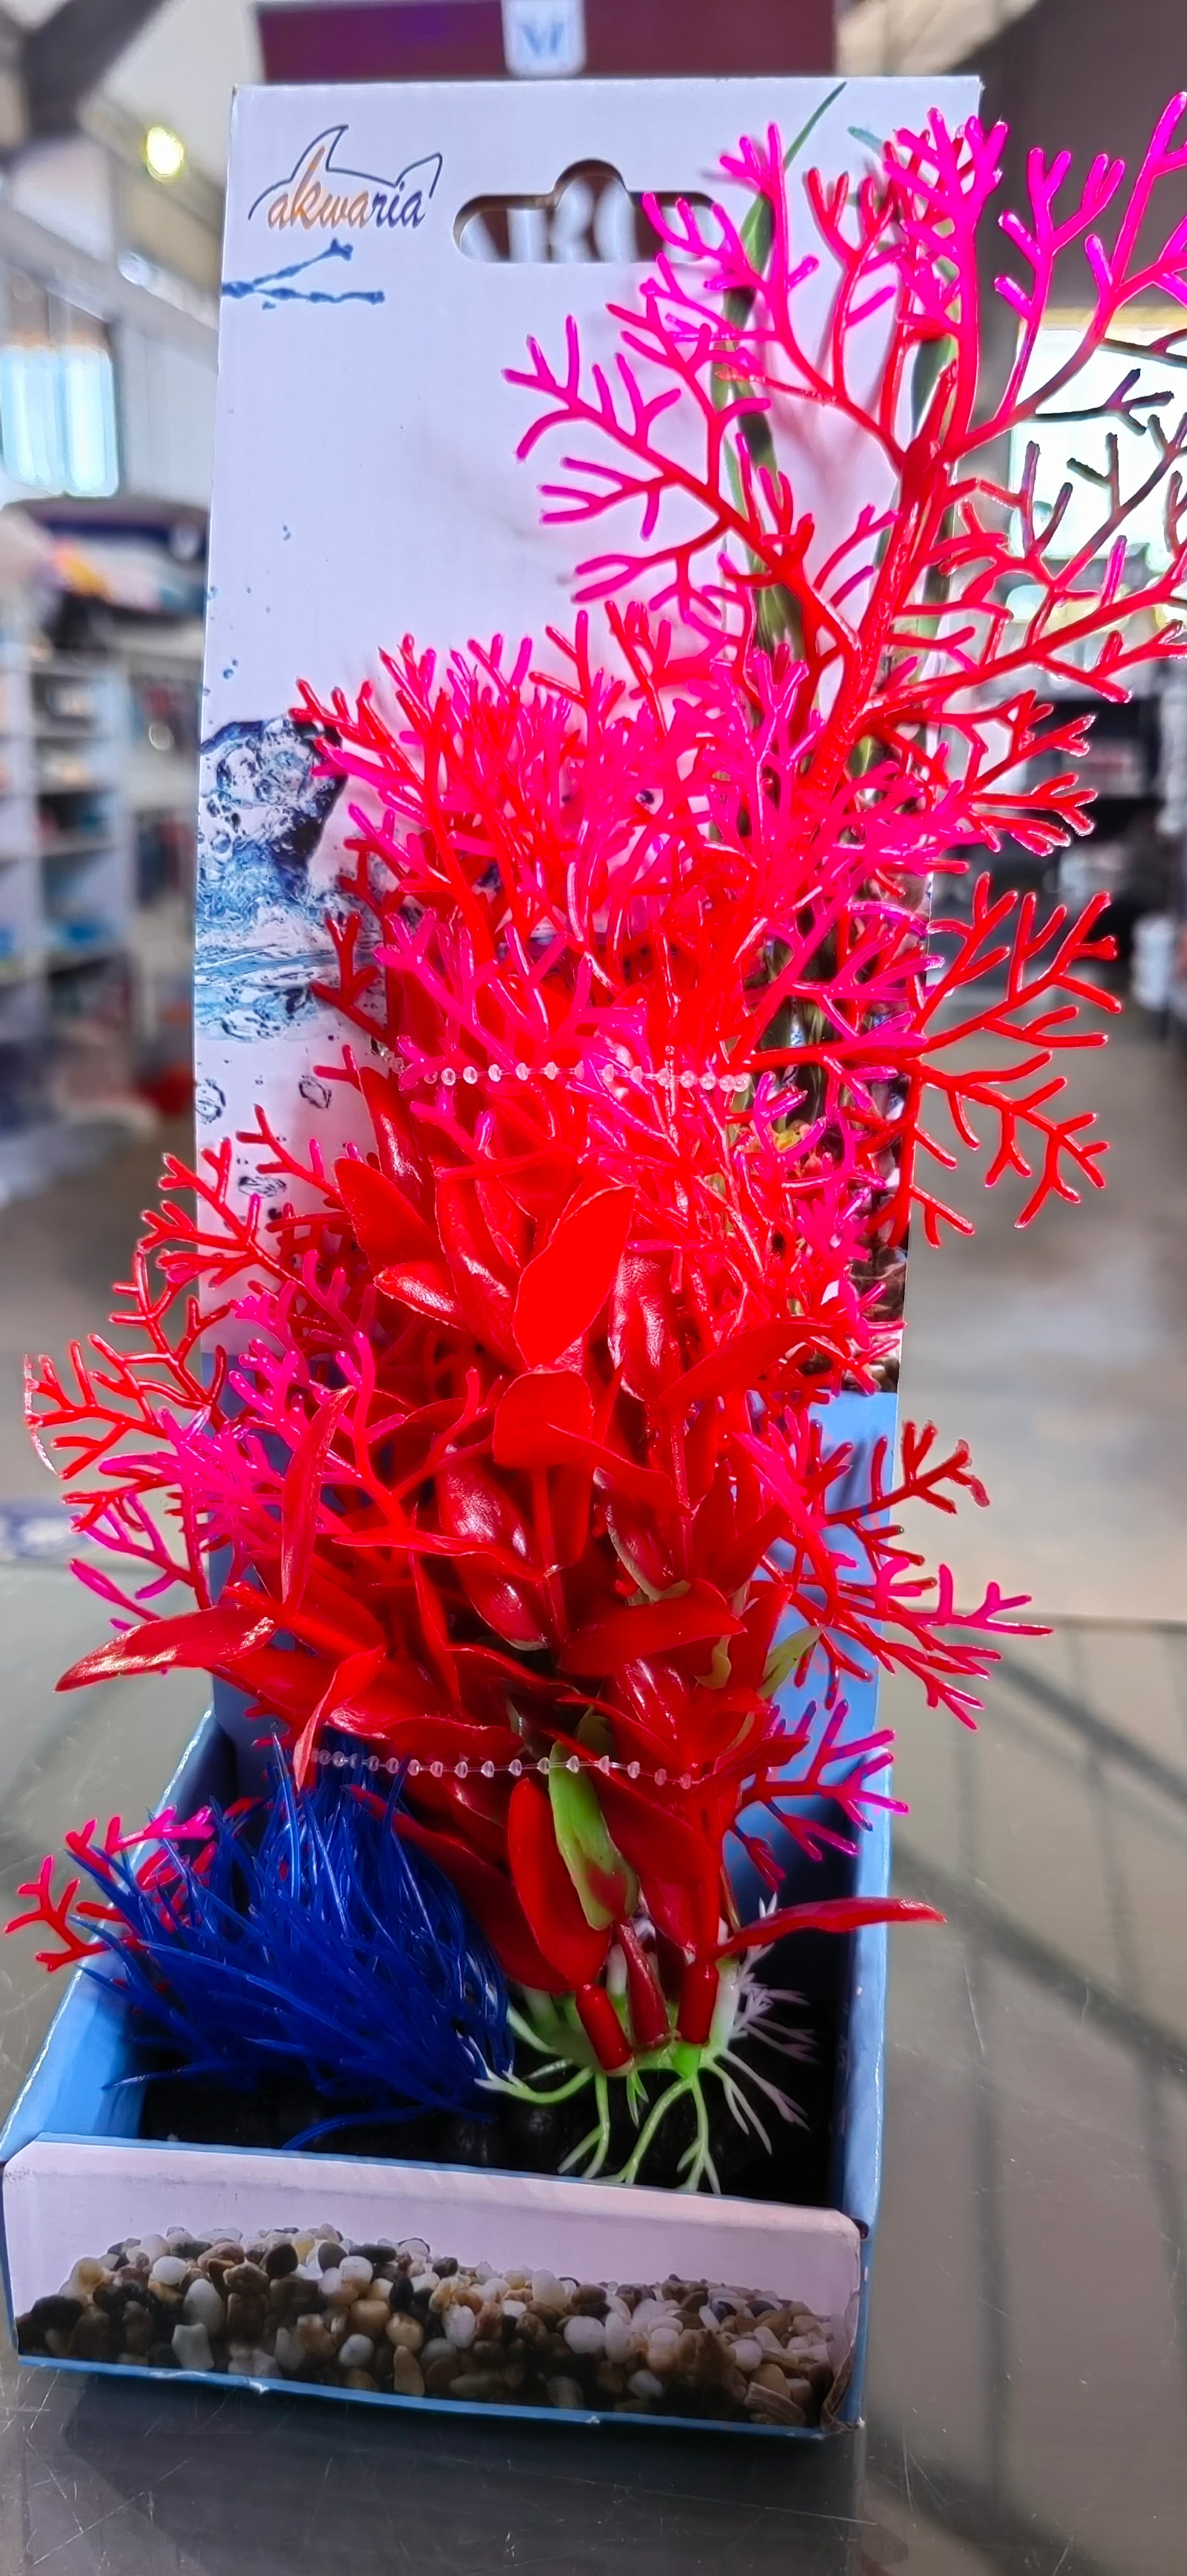 Akwa Multi Color Plastic Plants